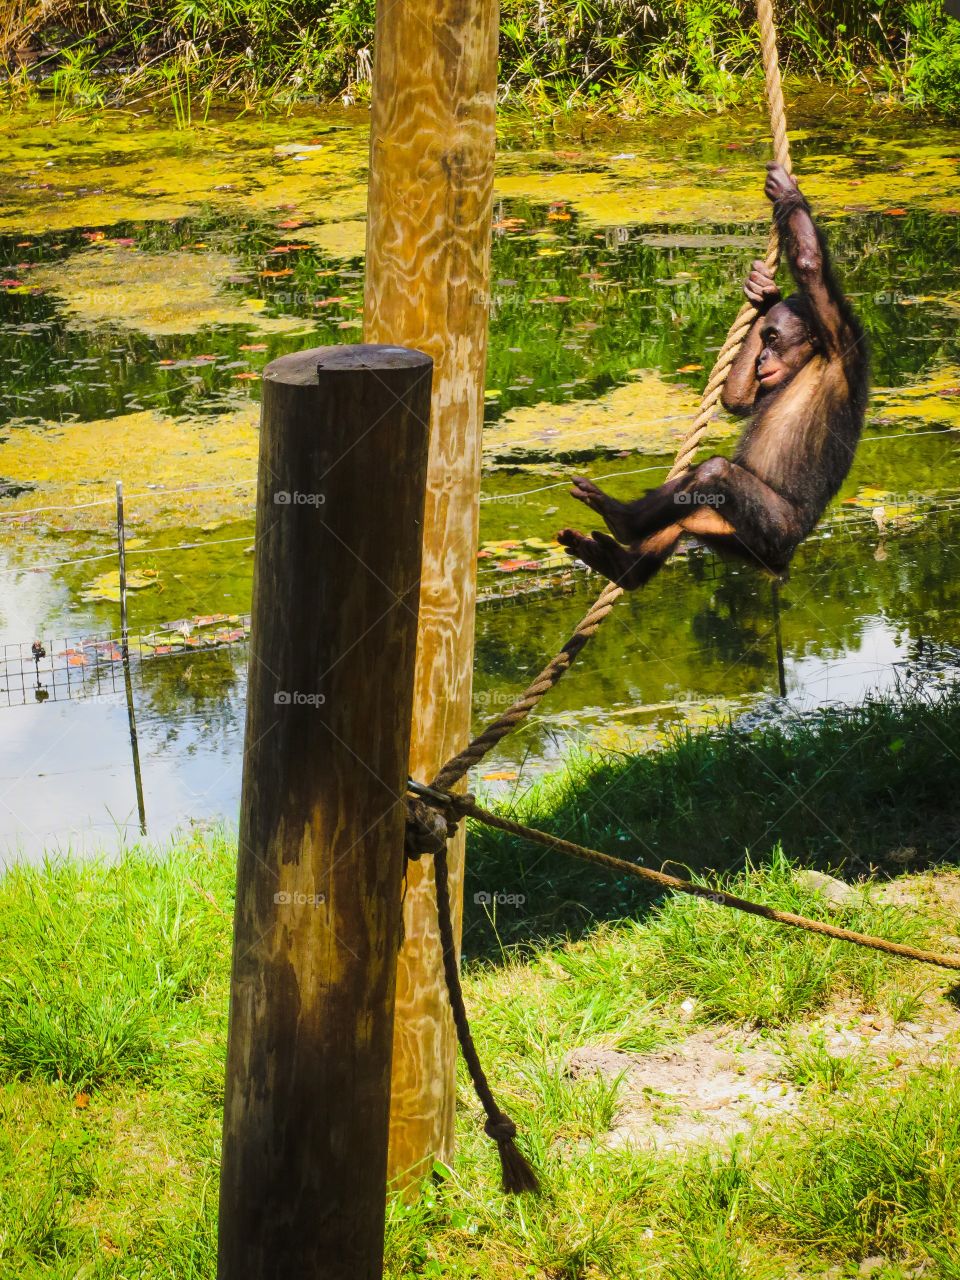 Swinging monkey